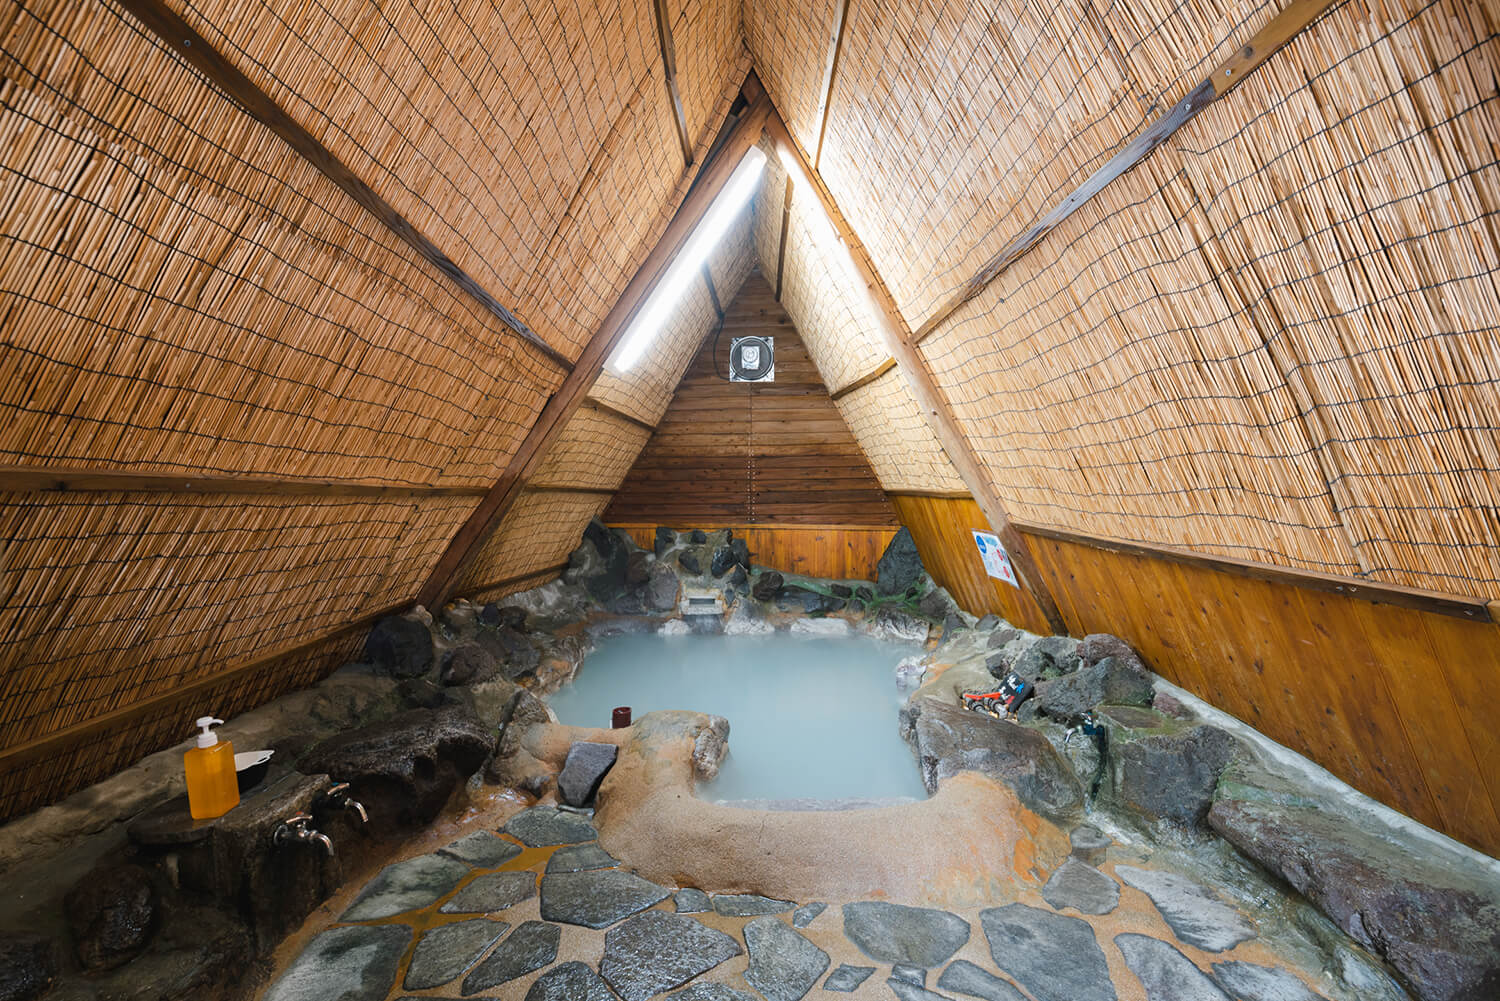 大露天風呂とは対照的に、秘密基地のようなワクワク感のある浴室内